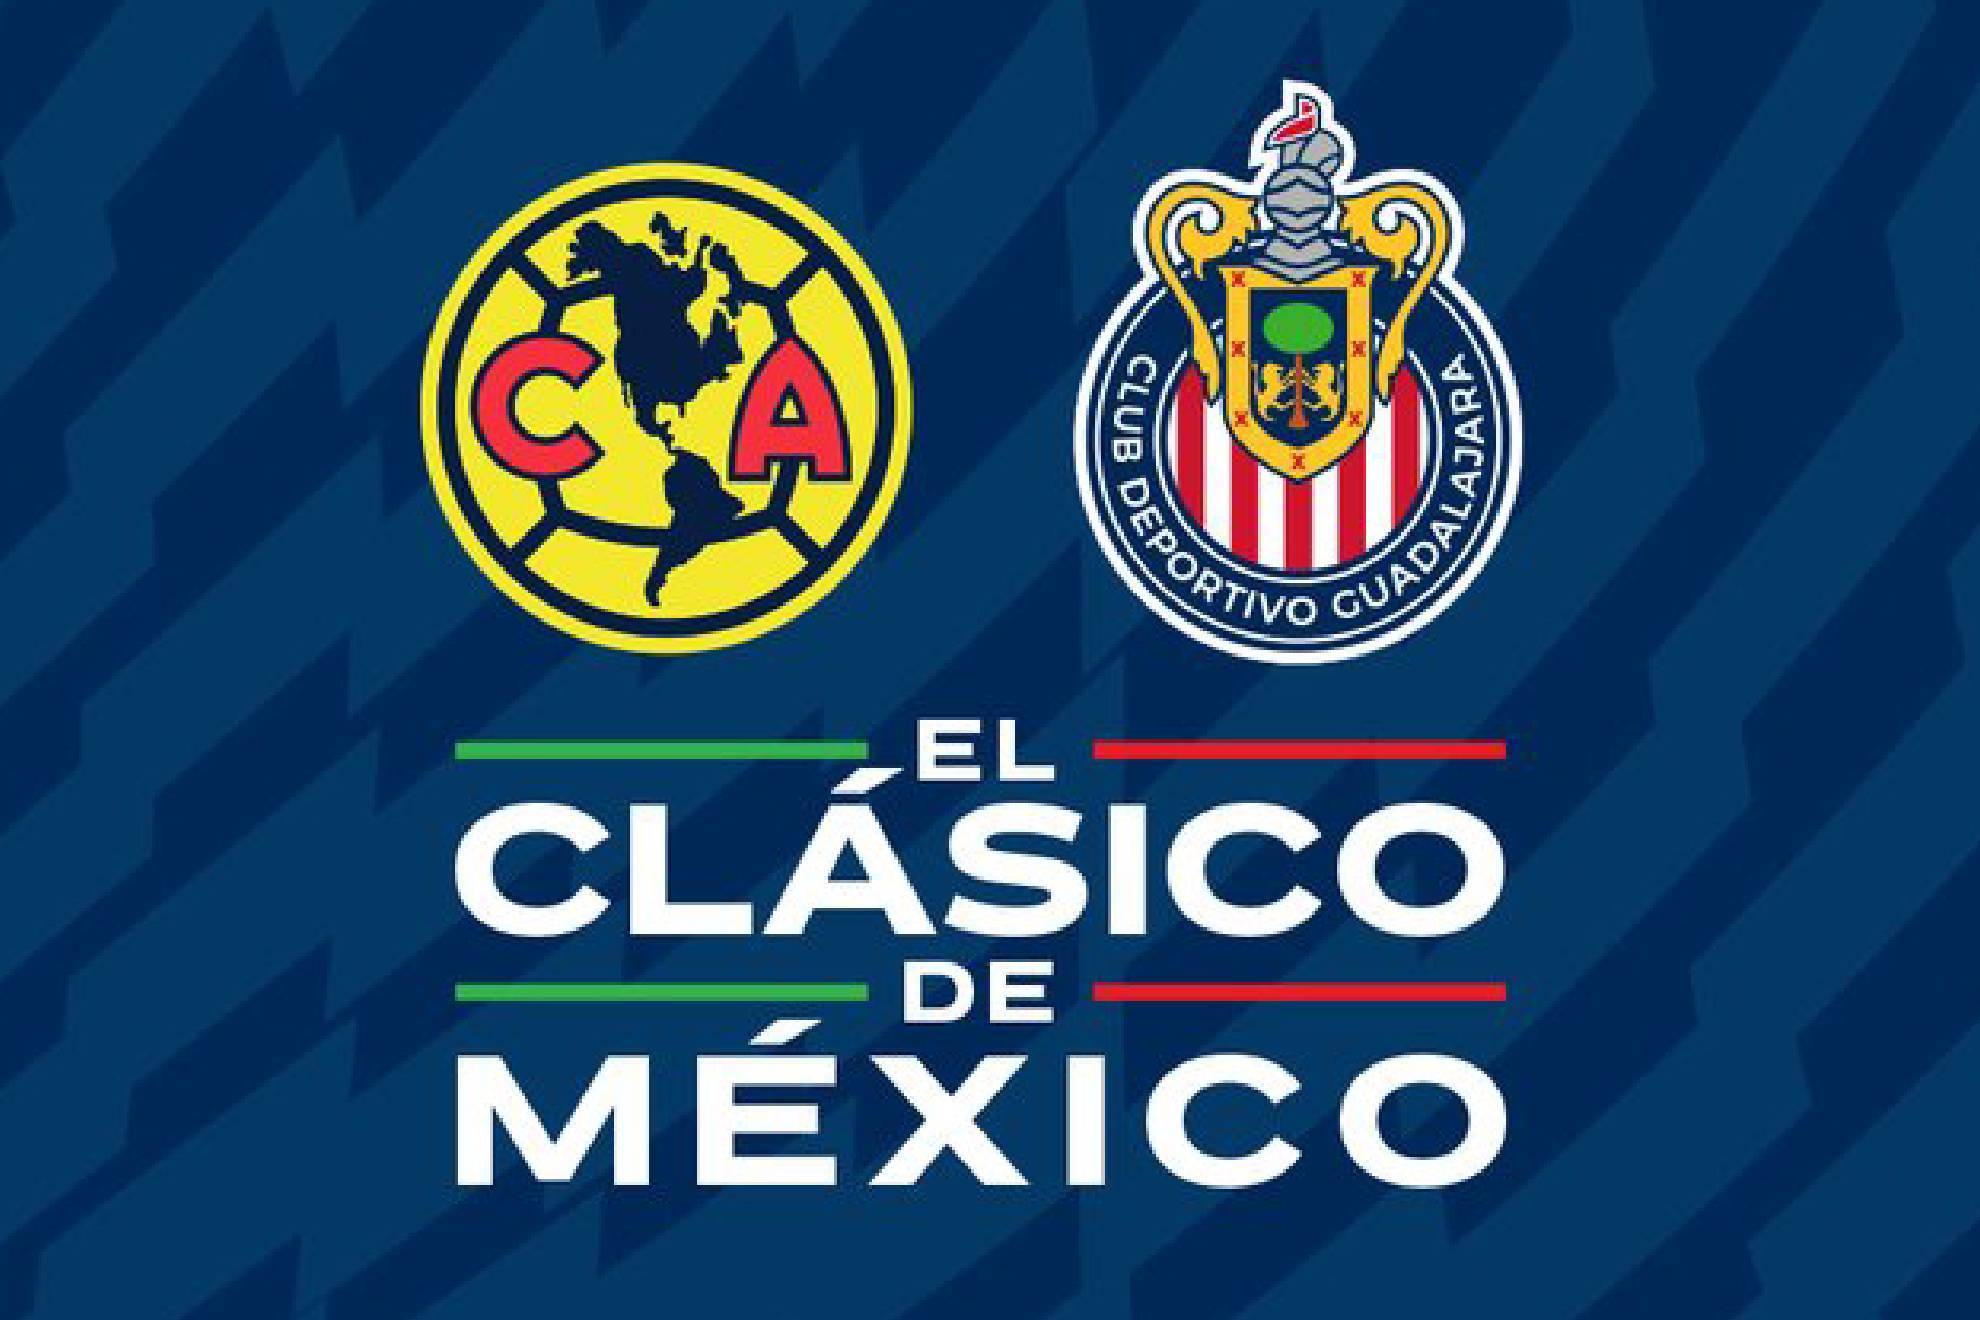 América y Guadalajara protagonizarán otro capítulo de su rivalidad en la Jornada 11 de la Liga MX Femenil en el Ape23